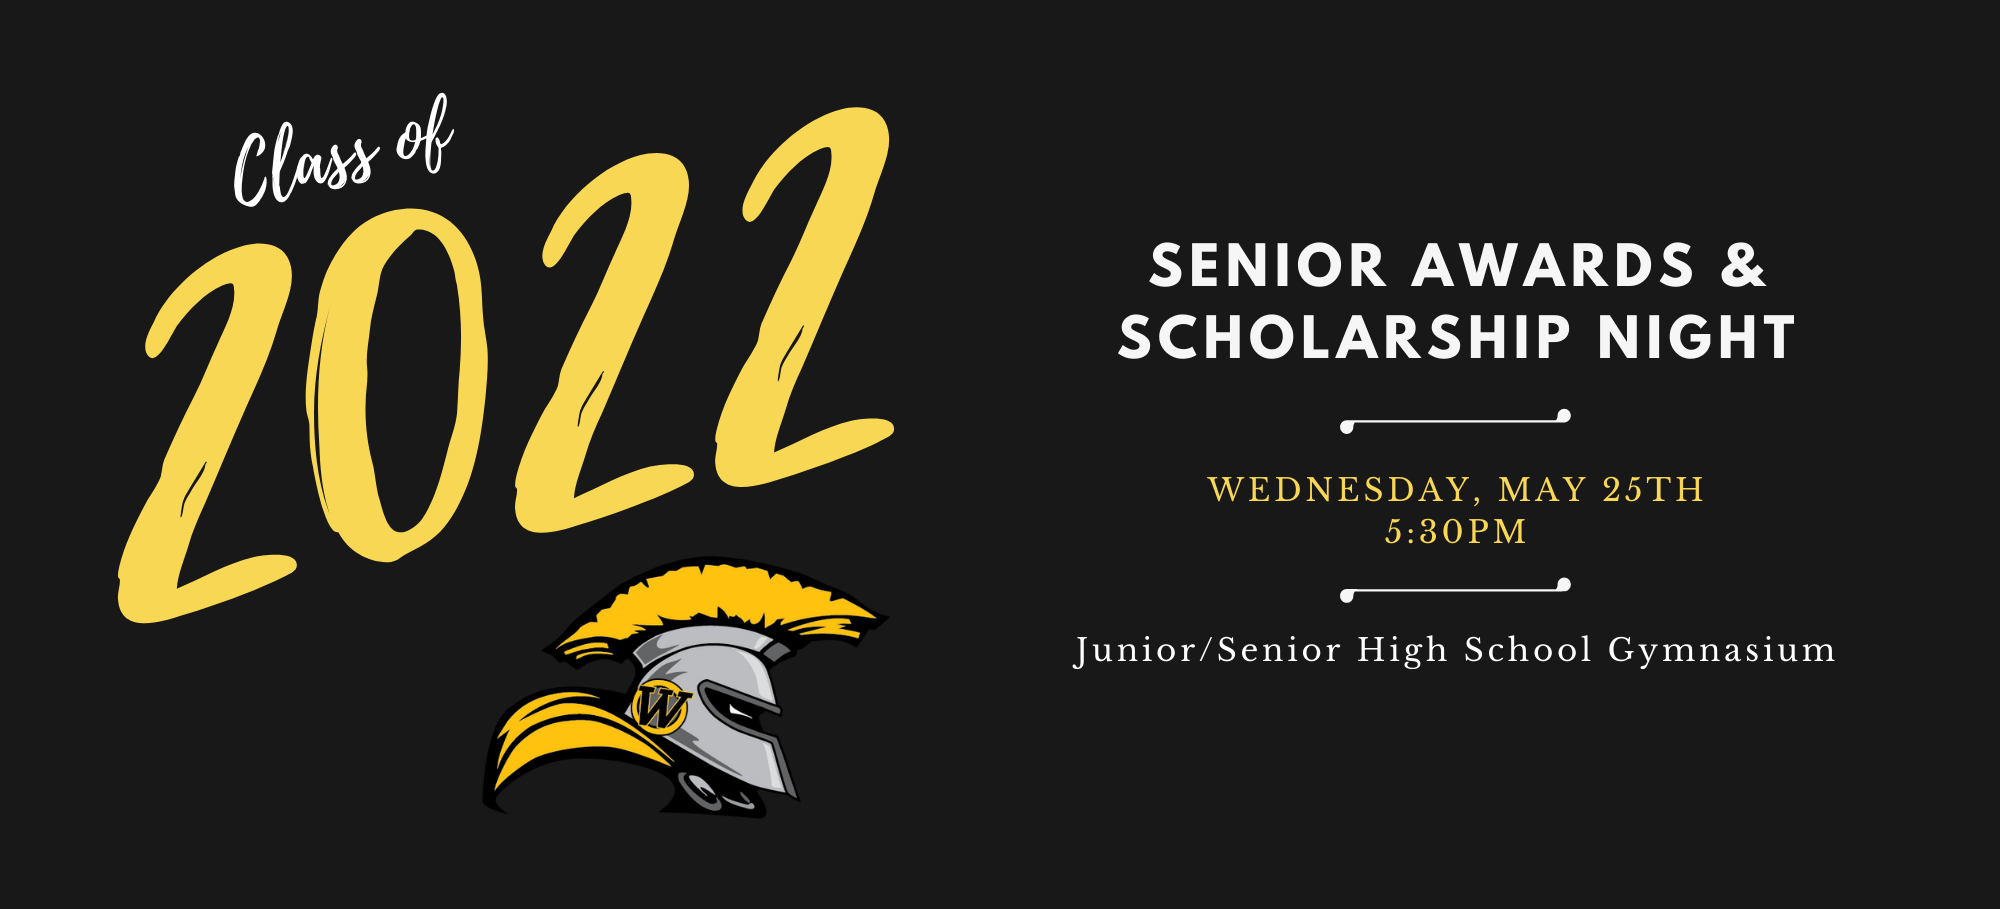 Senior Awards & Scholarship Night info